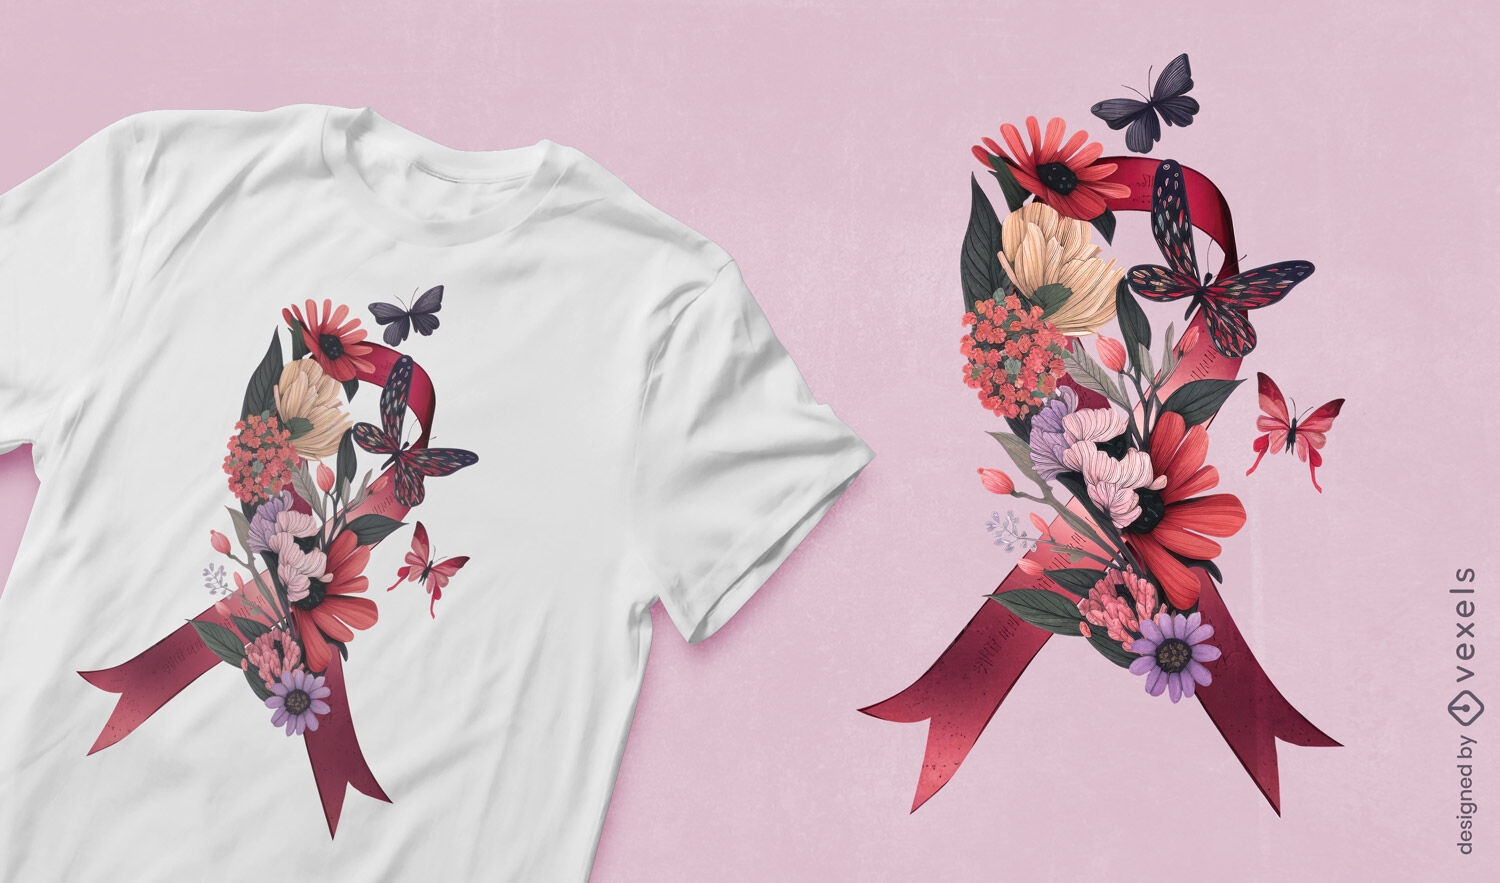 Diseño de camiseta con cinta floral.